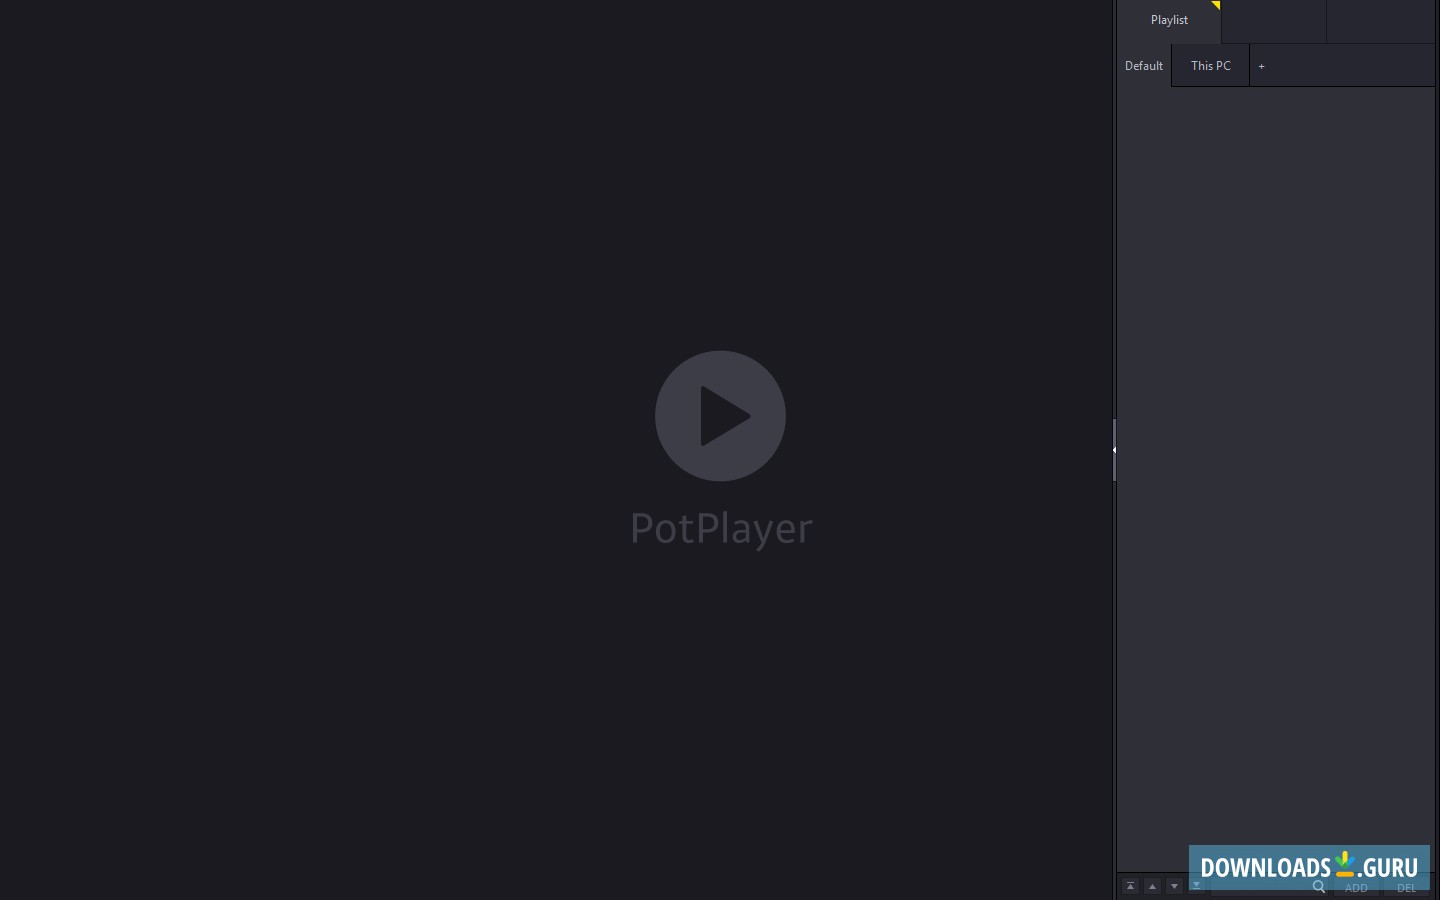 potplayer download for windows 8